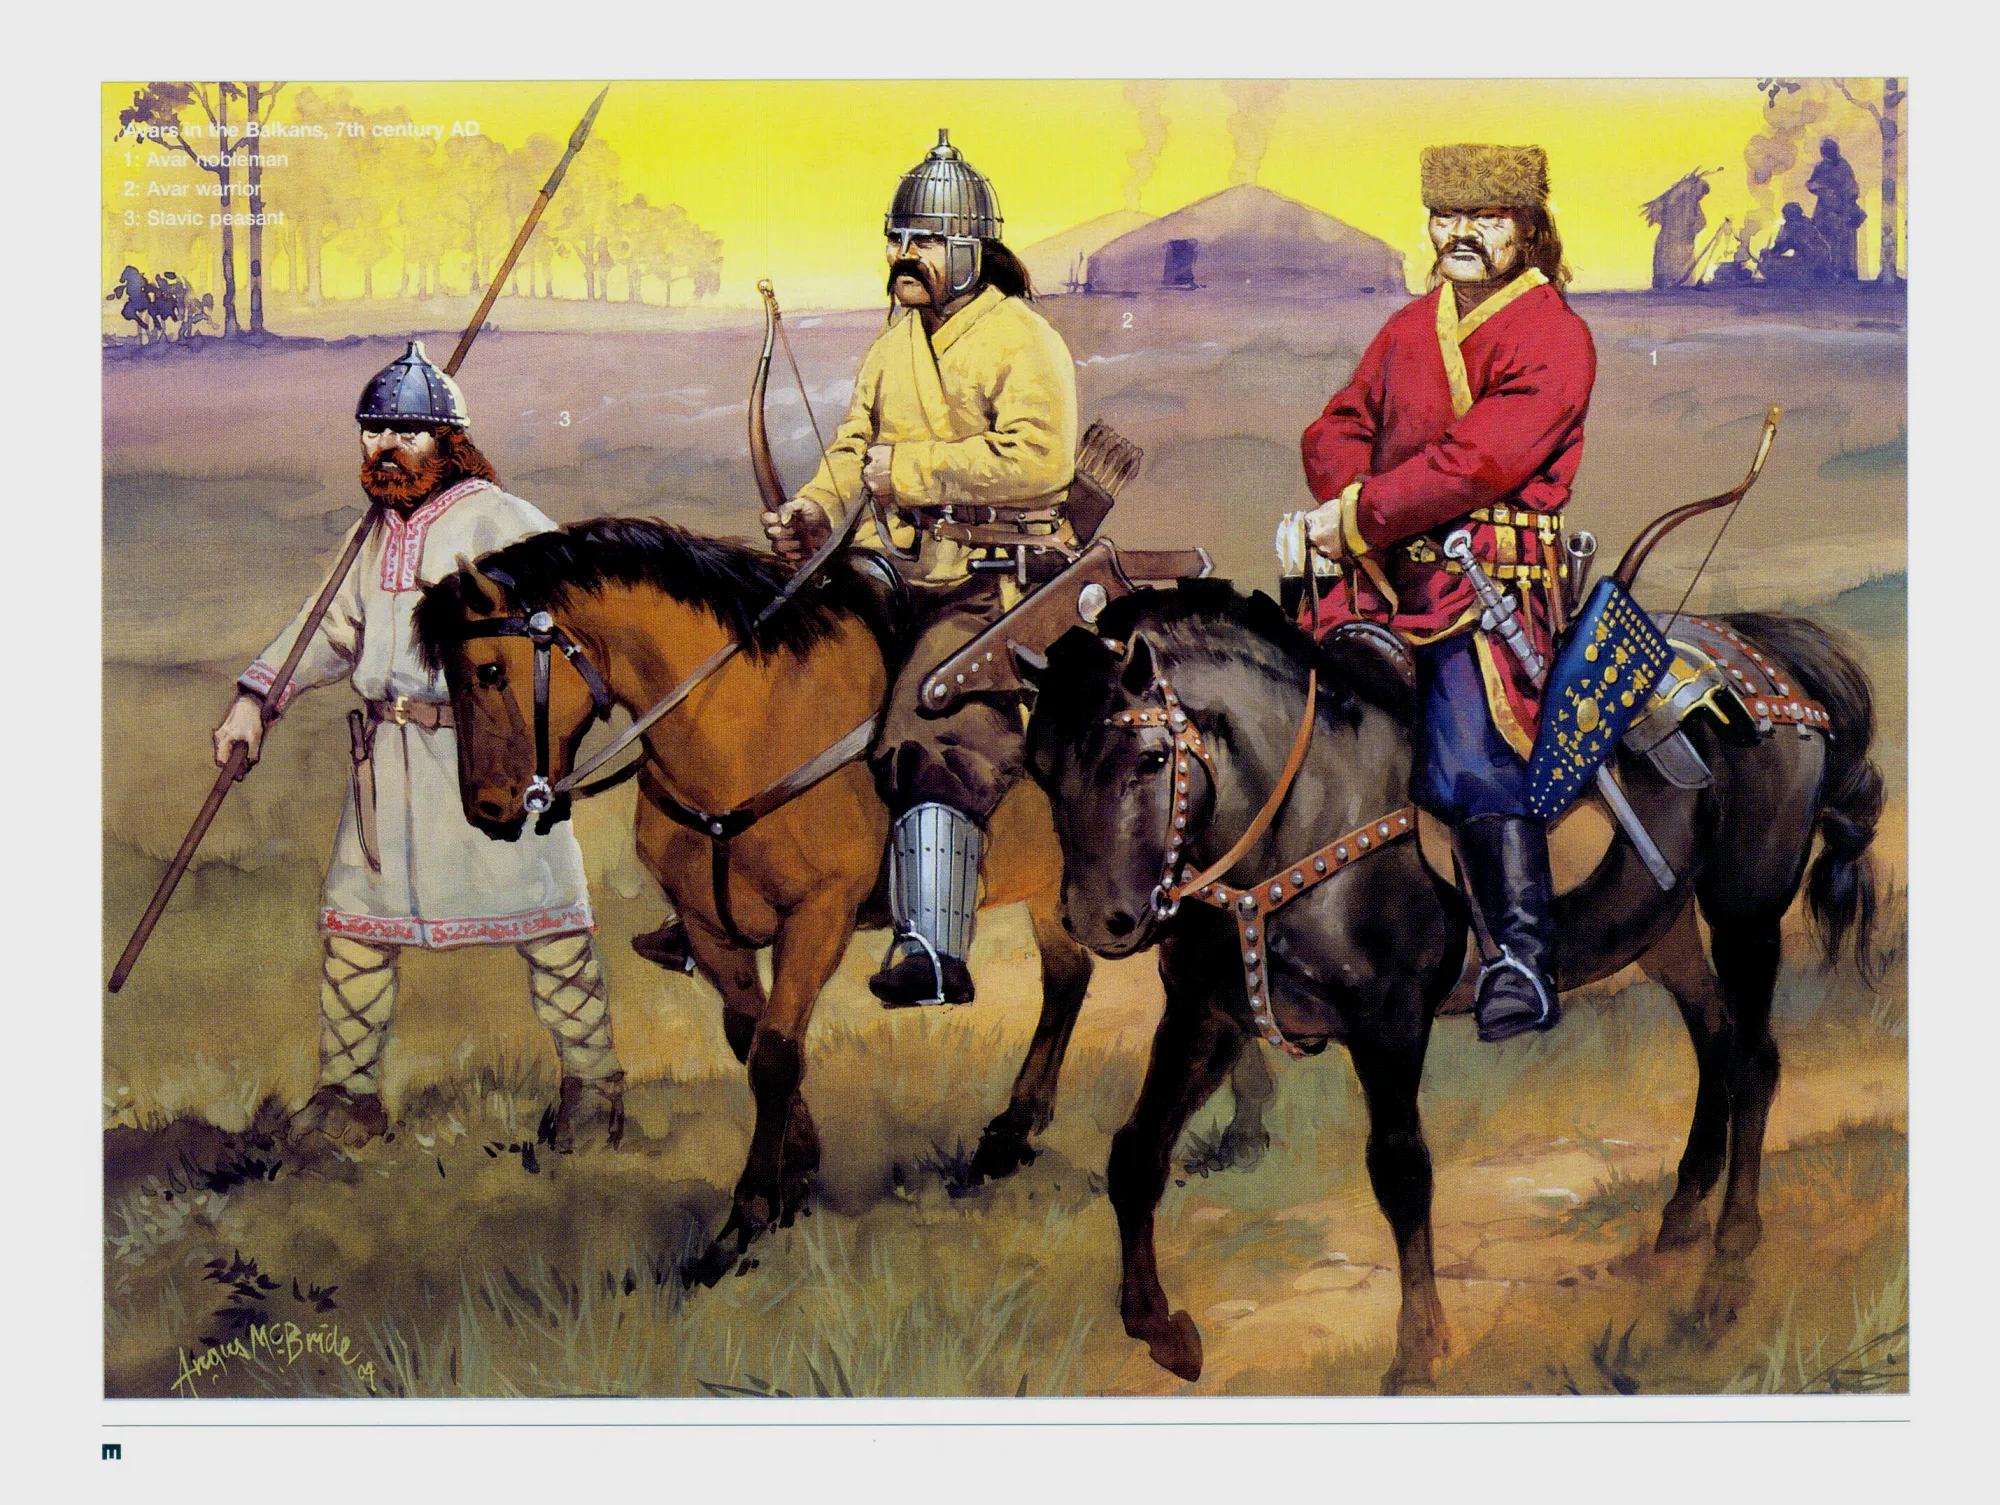 阿瓦尔贵族弓骑兵，他们使用的马镫是铸造的铁制马镫，拜占庭也是从他们这里学会了使用马镫，只不过拜占庭使用的是木框马镫